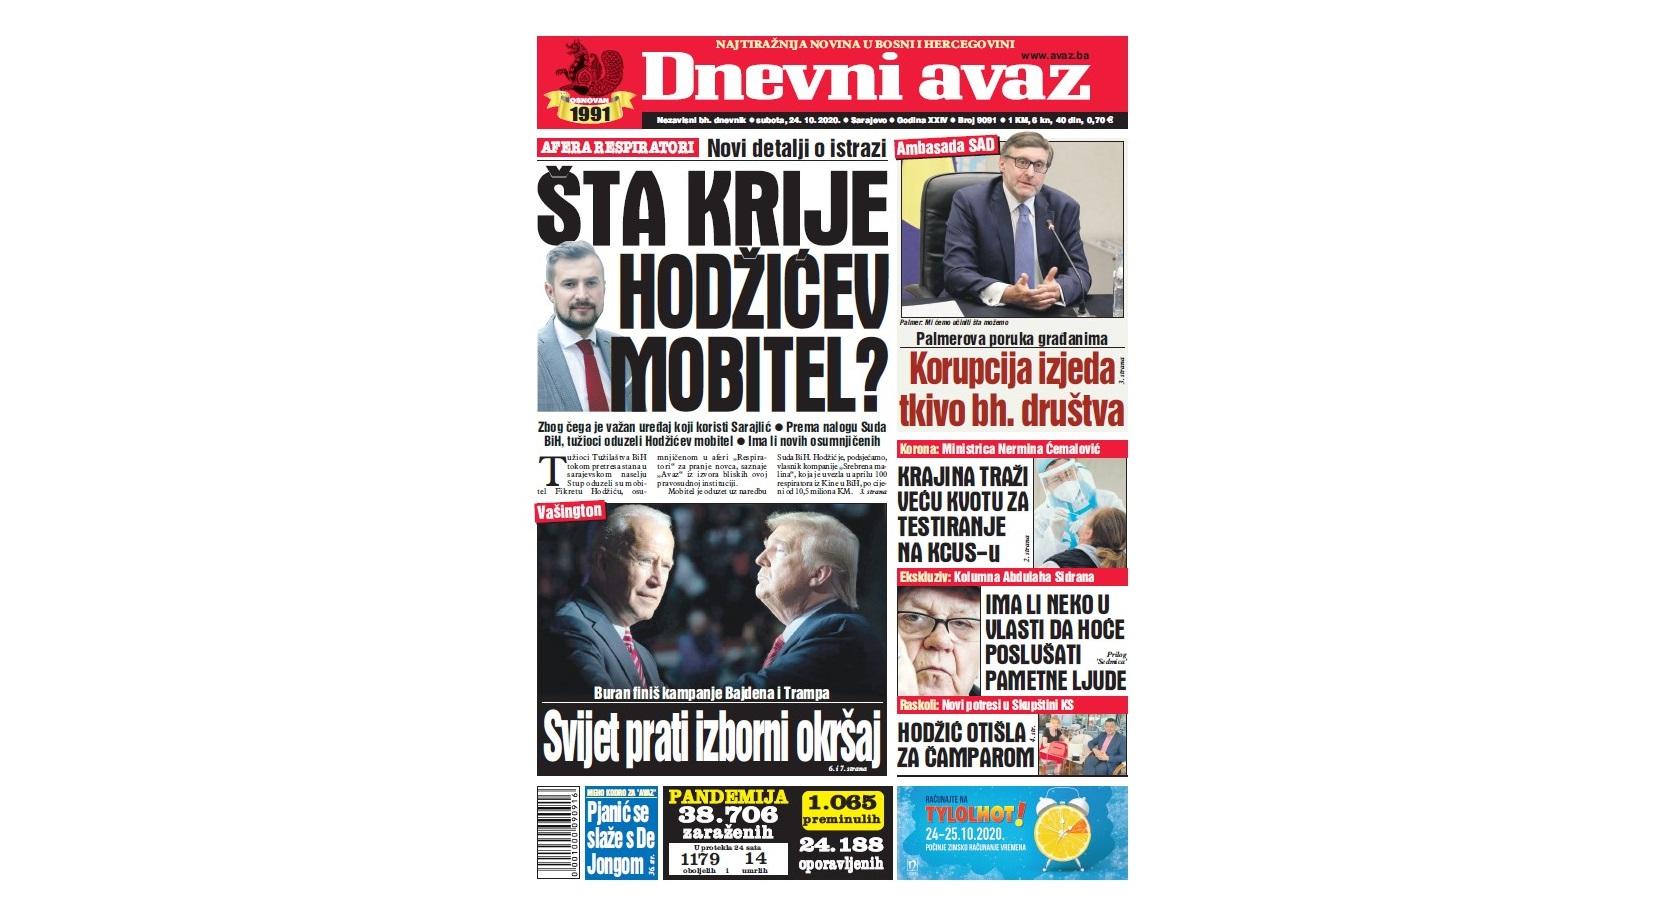 Danas u "Dnevnom avazu" čitajte: Šta krije Hodžićev mobitel?